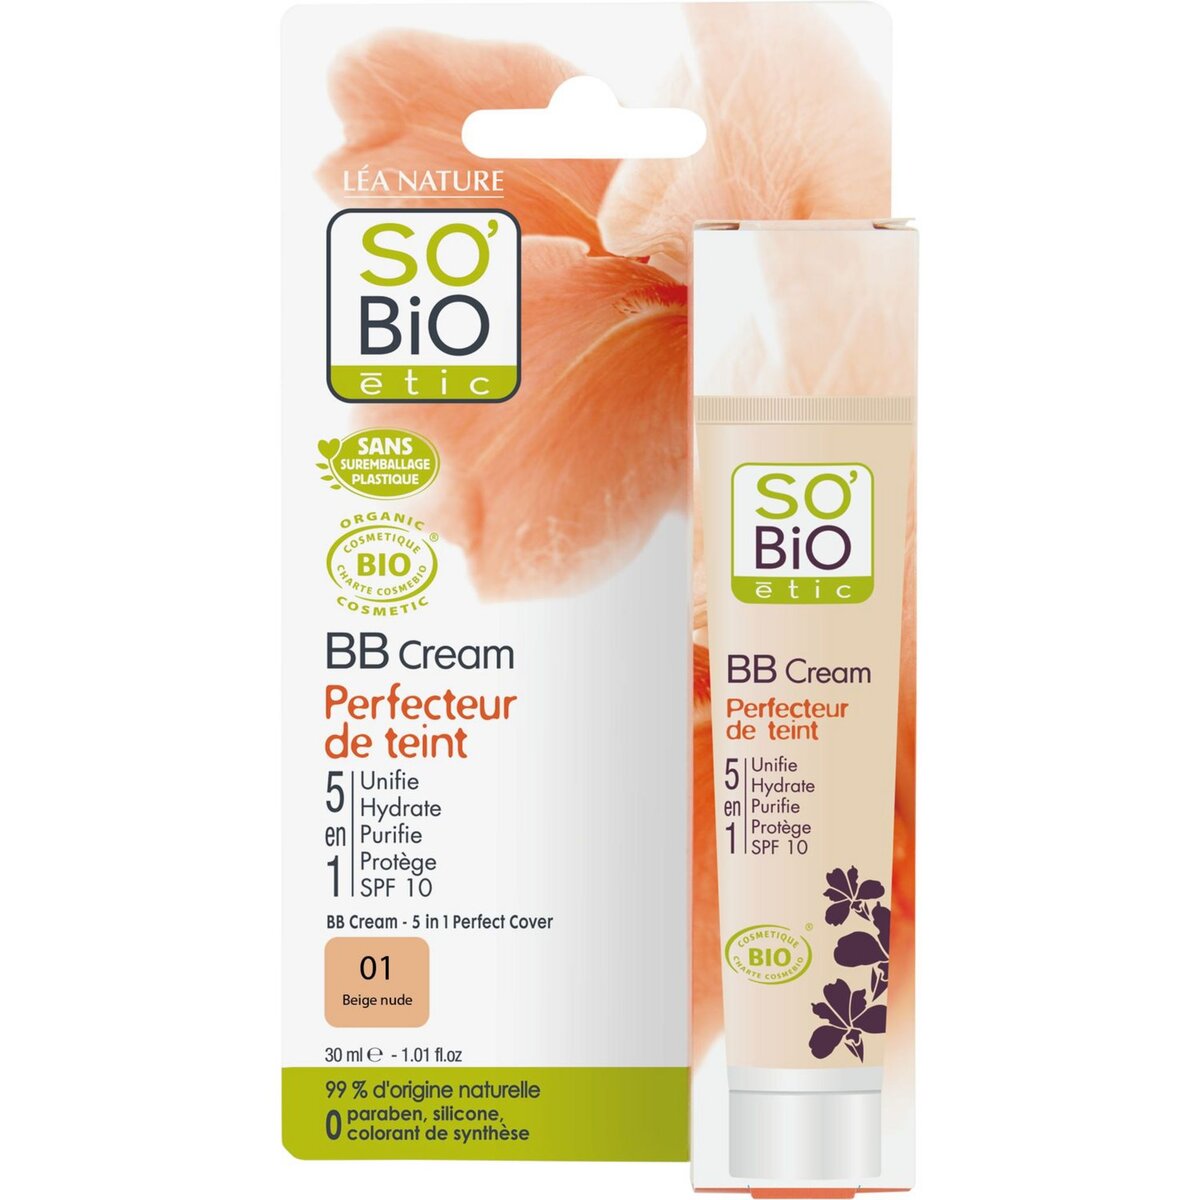 SO BIO So Bio etic bb cream 01 beige nude 30ml